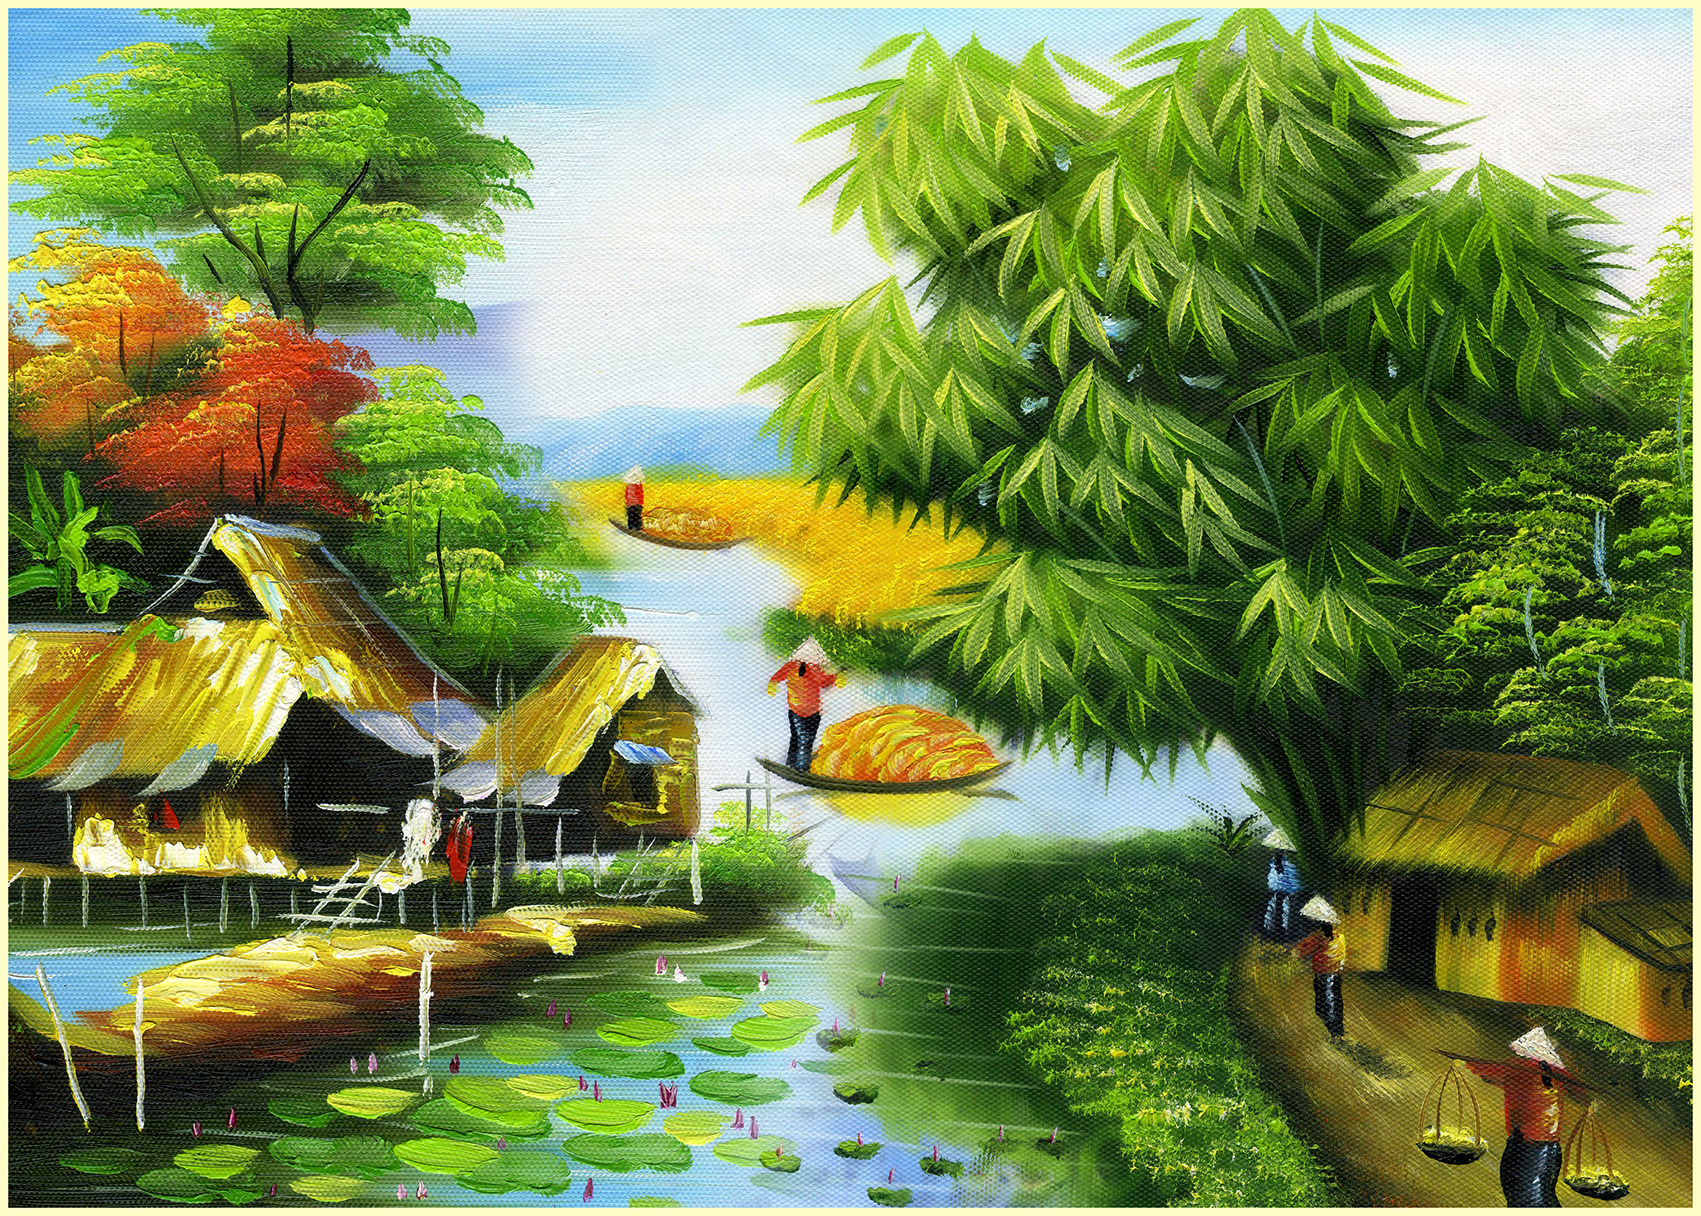 HUMANDECOR-6416 - Lâm Quang Phát là một trong những nghệ sĩ tài năng trong lĩnh vực vẽ tranh phong cảnh với chiếc bút kỹ thuật số thông minh. Với sự tài hoa của anh ấy, hãy cùng xem bức tranh vẽ lá cây tre như một tác phẩm nghệ thuật đích thực của Lâm Quang Phát.